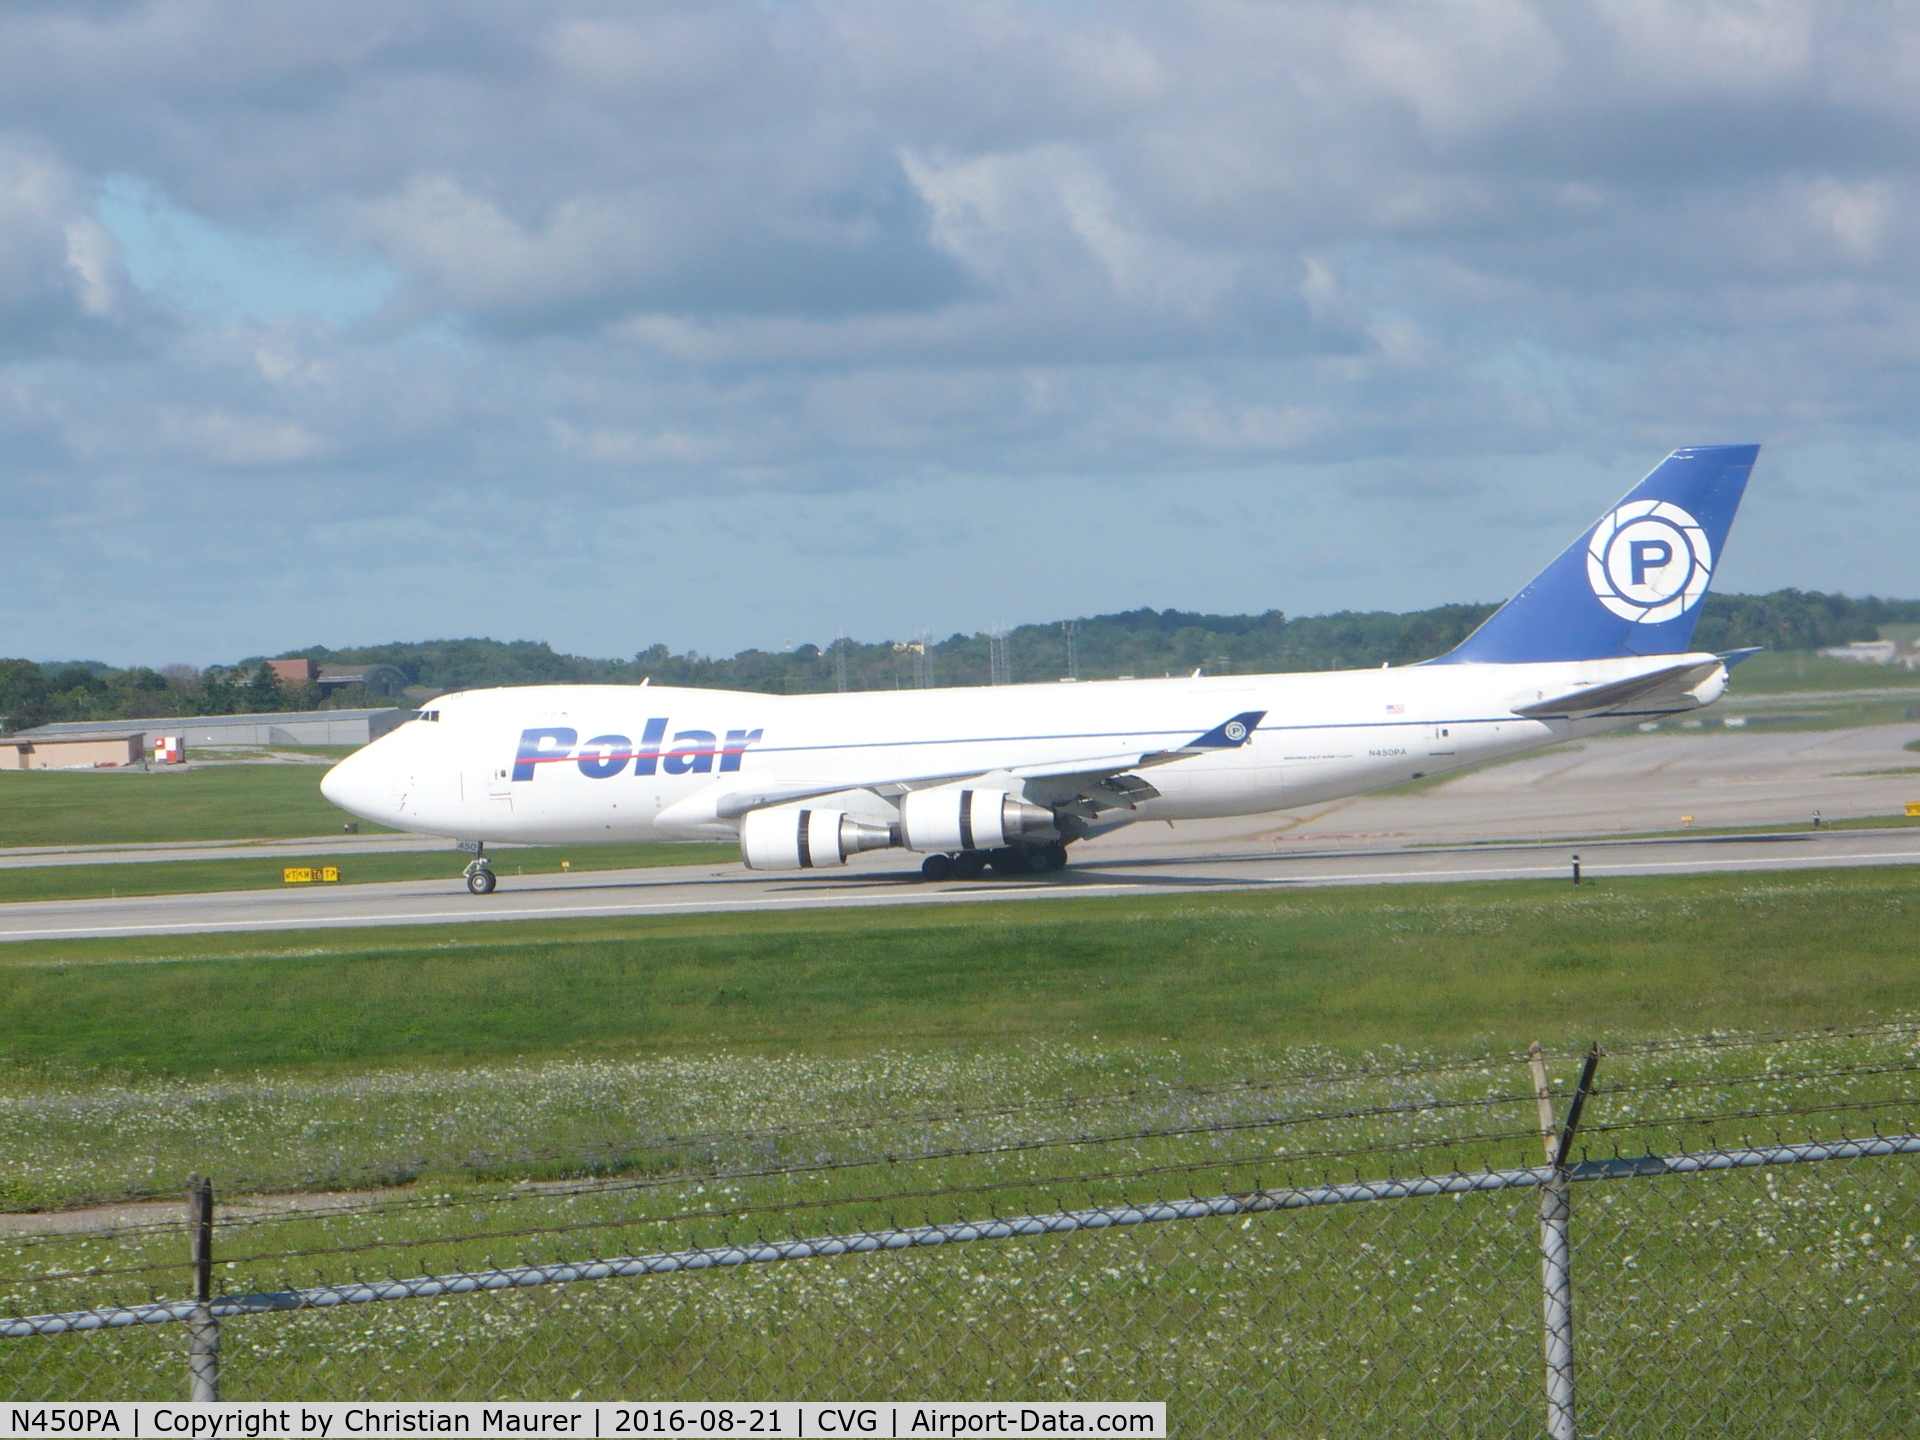 N450PA, 2000 Boeing 747-46NF C/N 30808, Polar 747-46NF